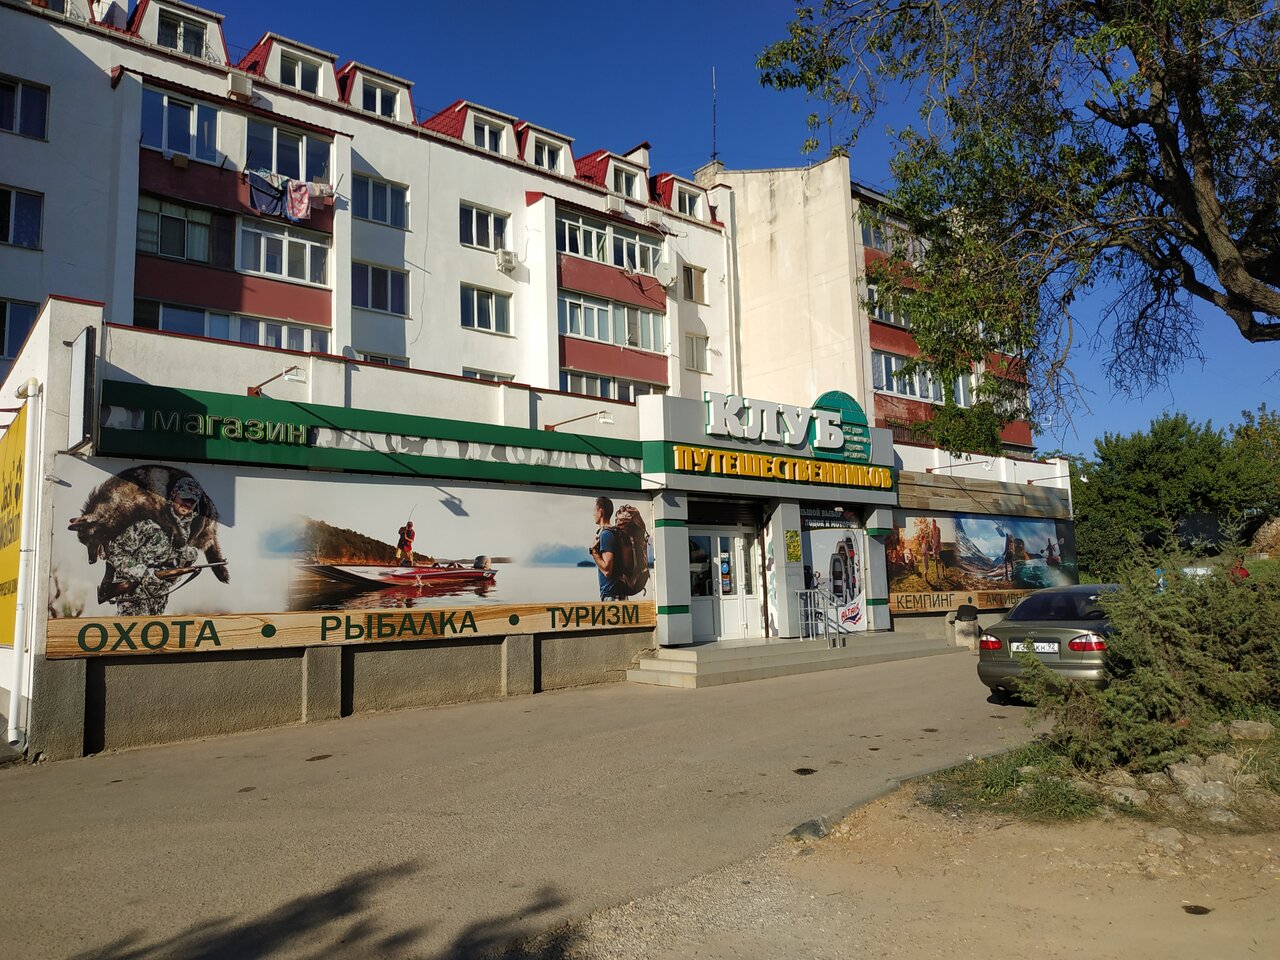 Расположения магазина снаряжения и экипировки "Клуб Путешественников" на Хрусталева в Севастополе